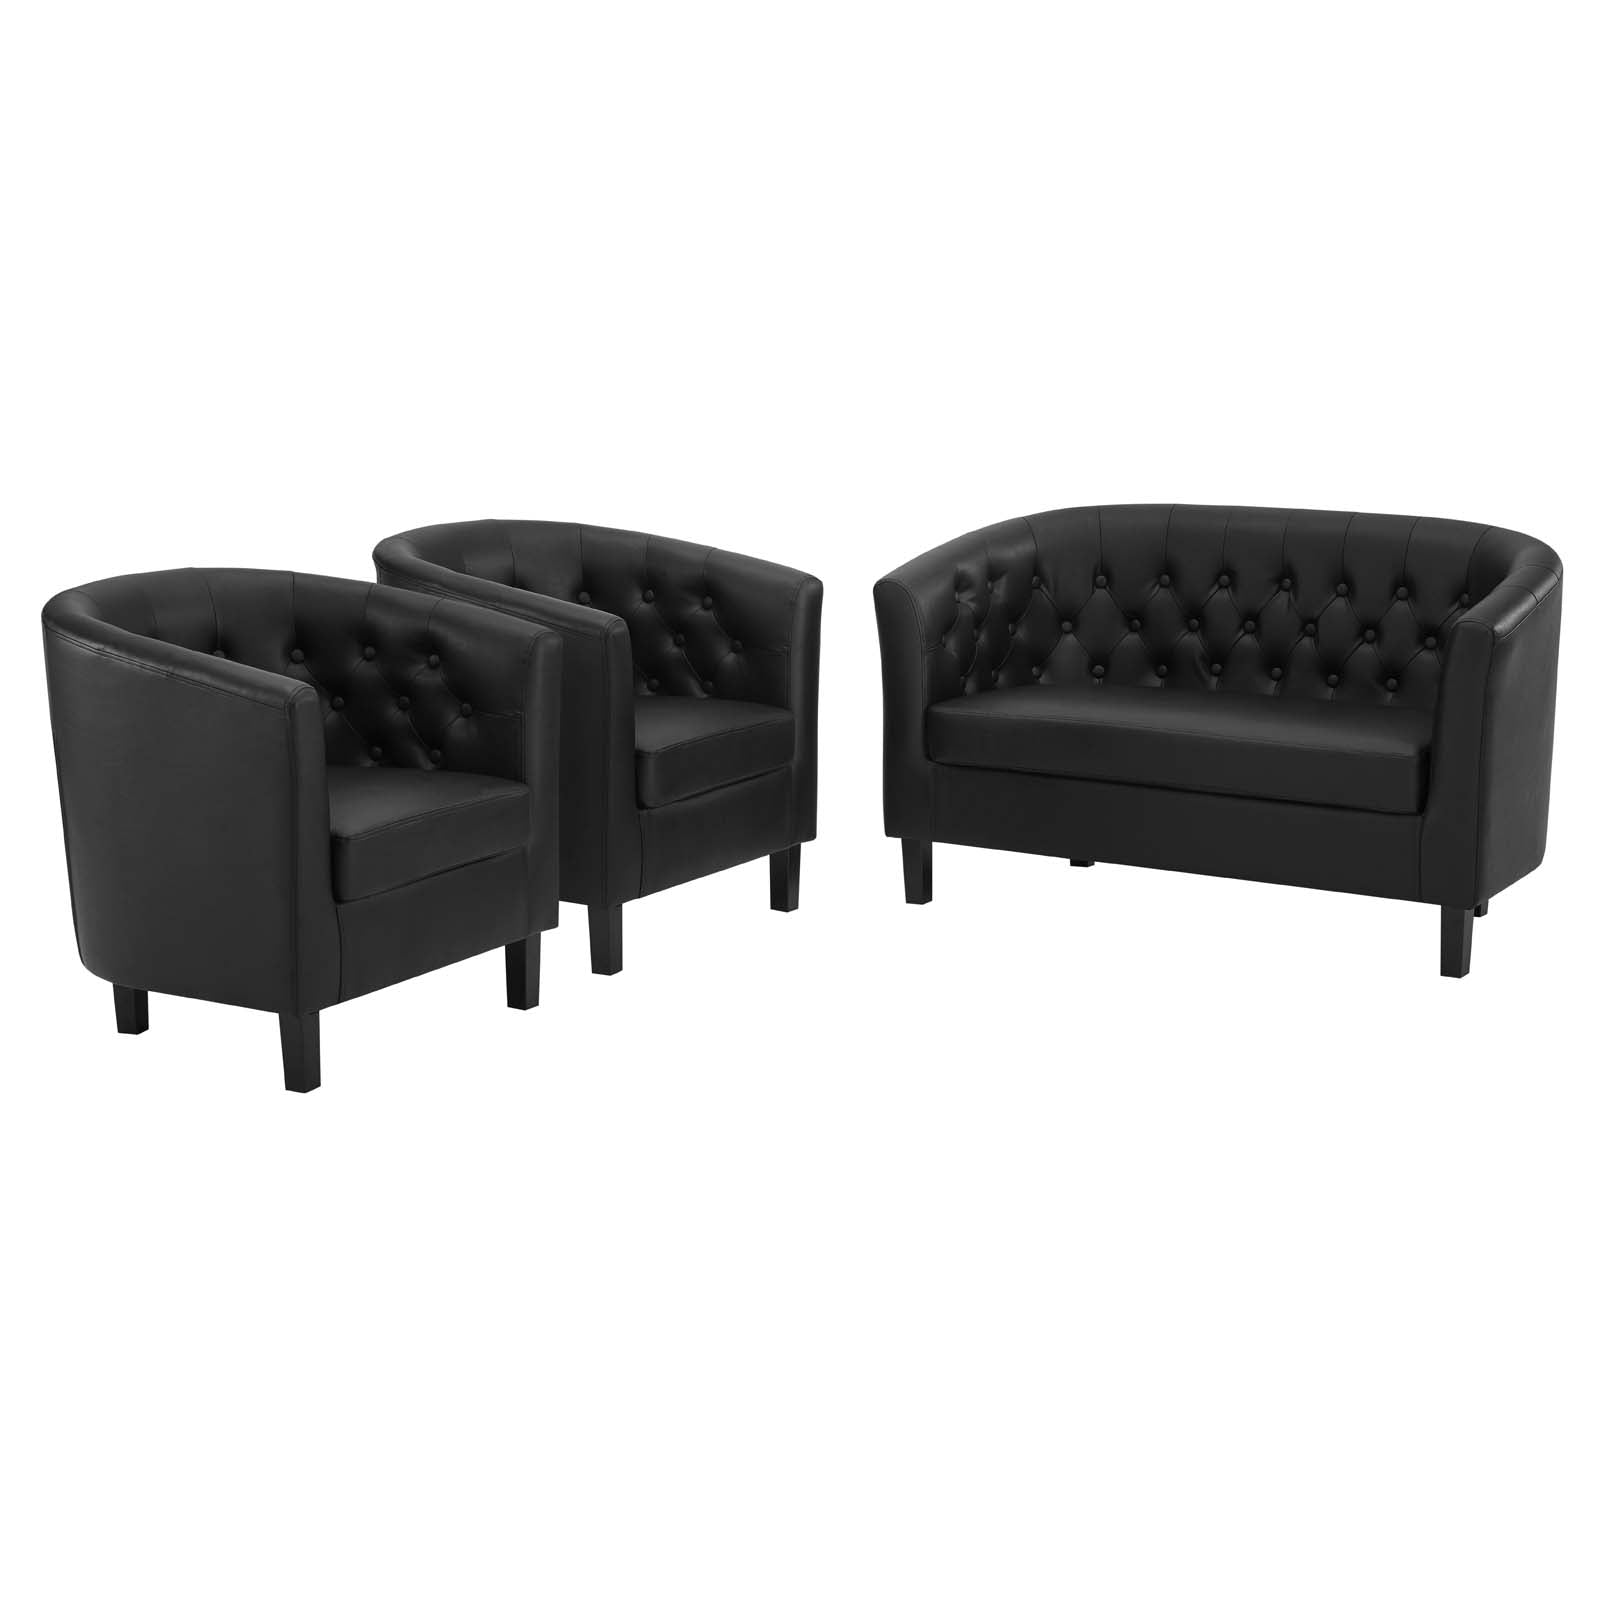 Modway Living Room Sets - Prospect 3 Piece Upholstered Vinyl Set Black